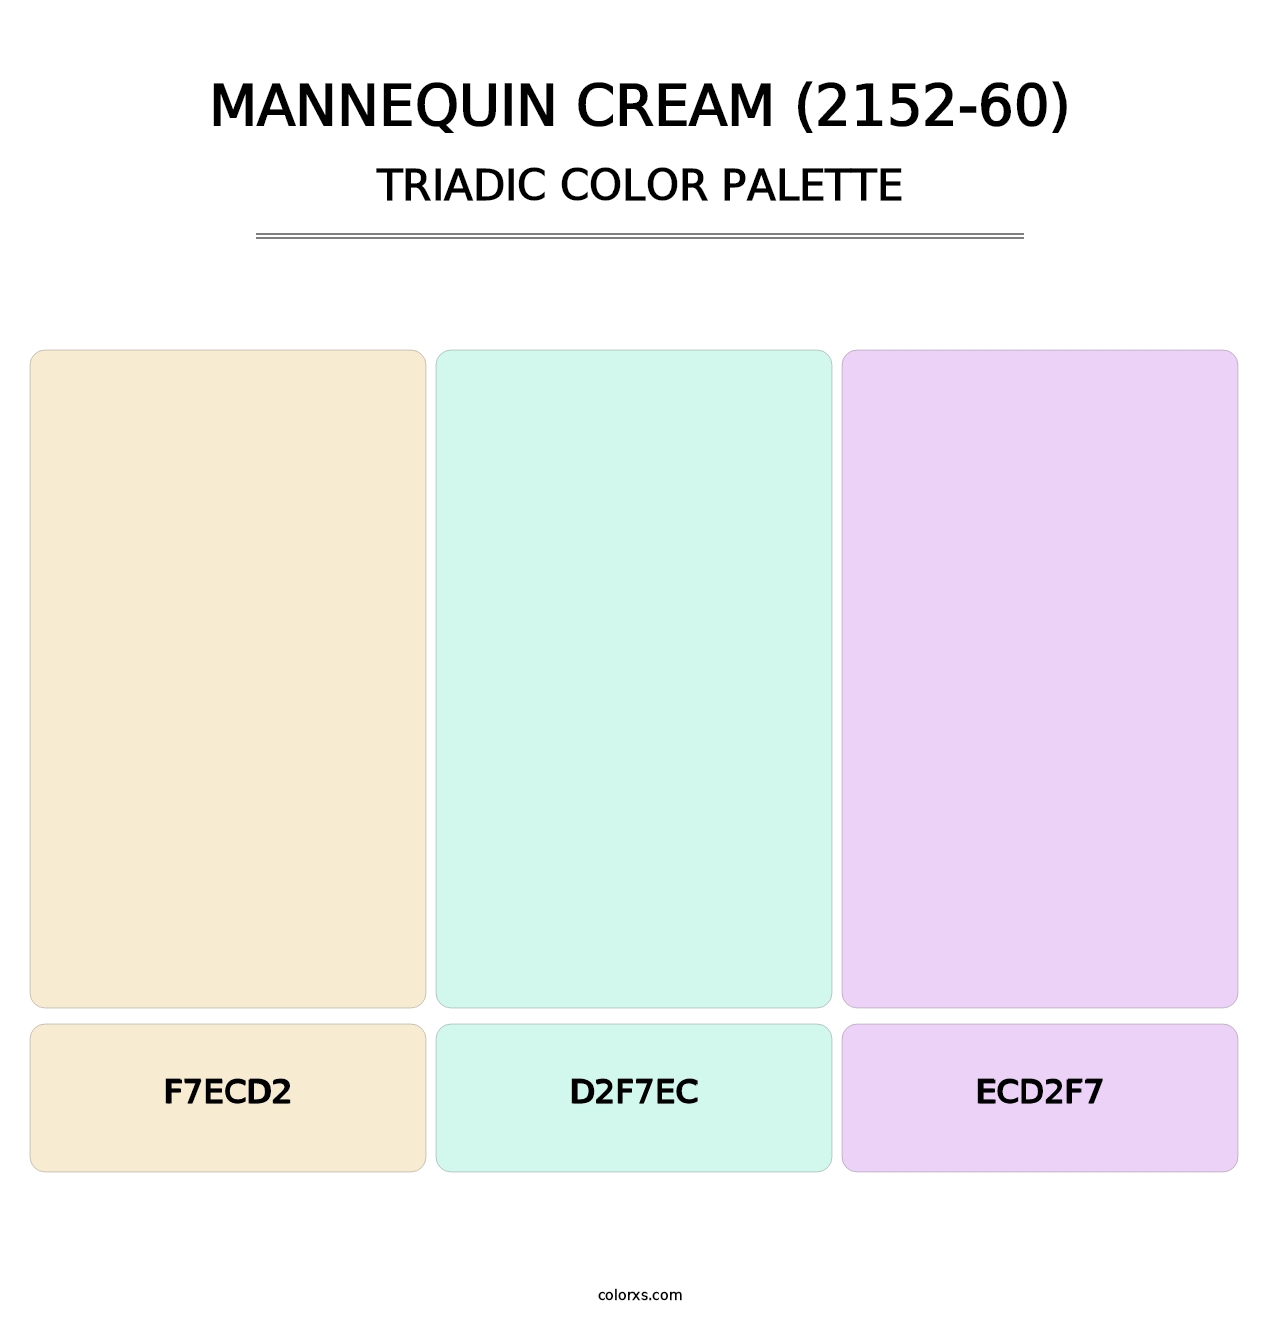 Mannequin Cream (2152-60) - Triadic Color Palette